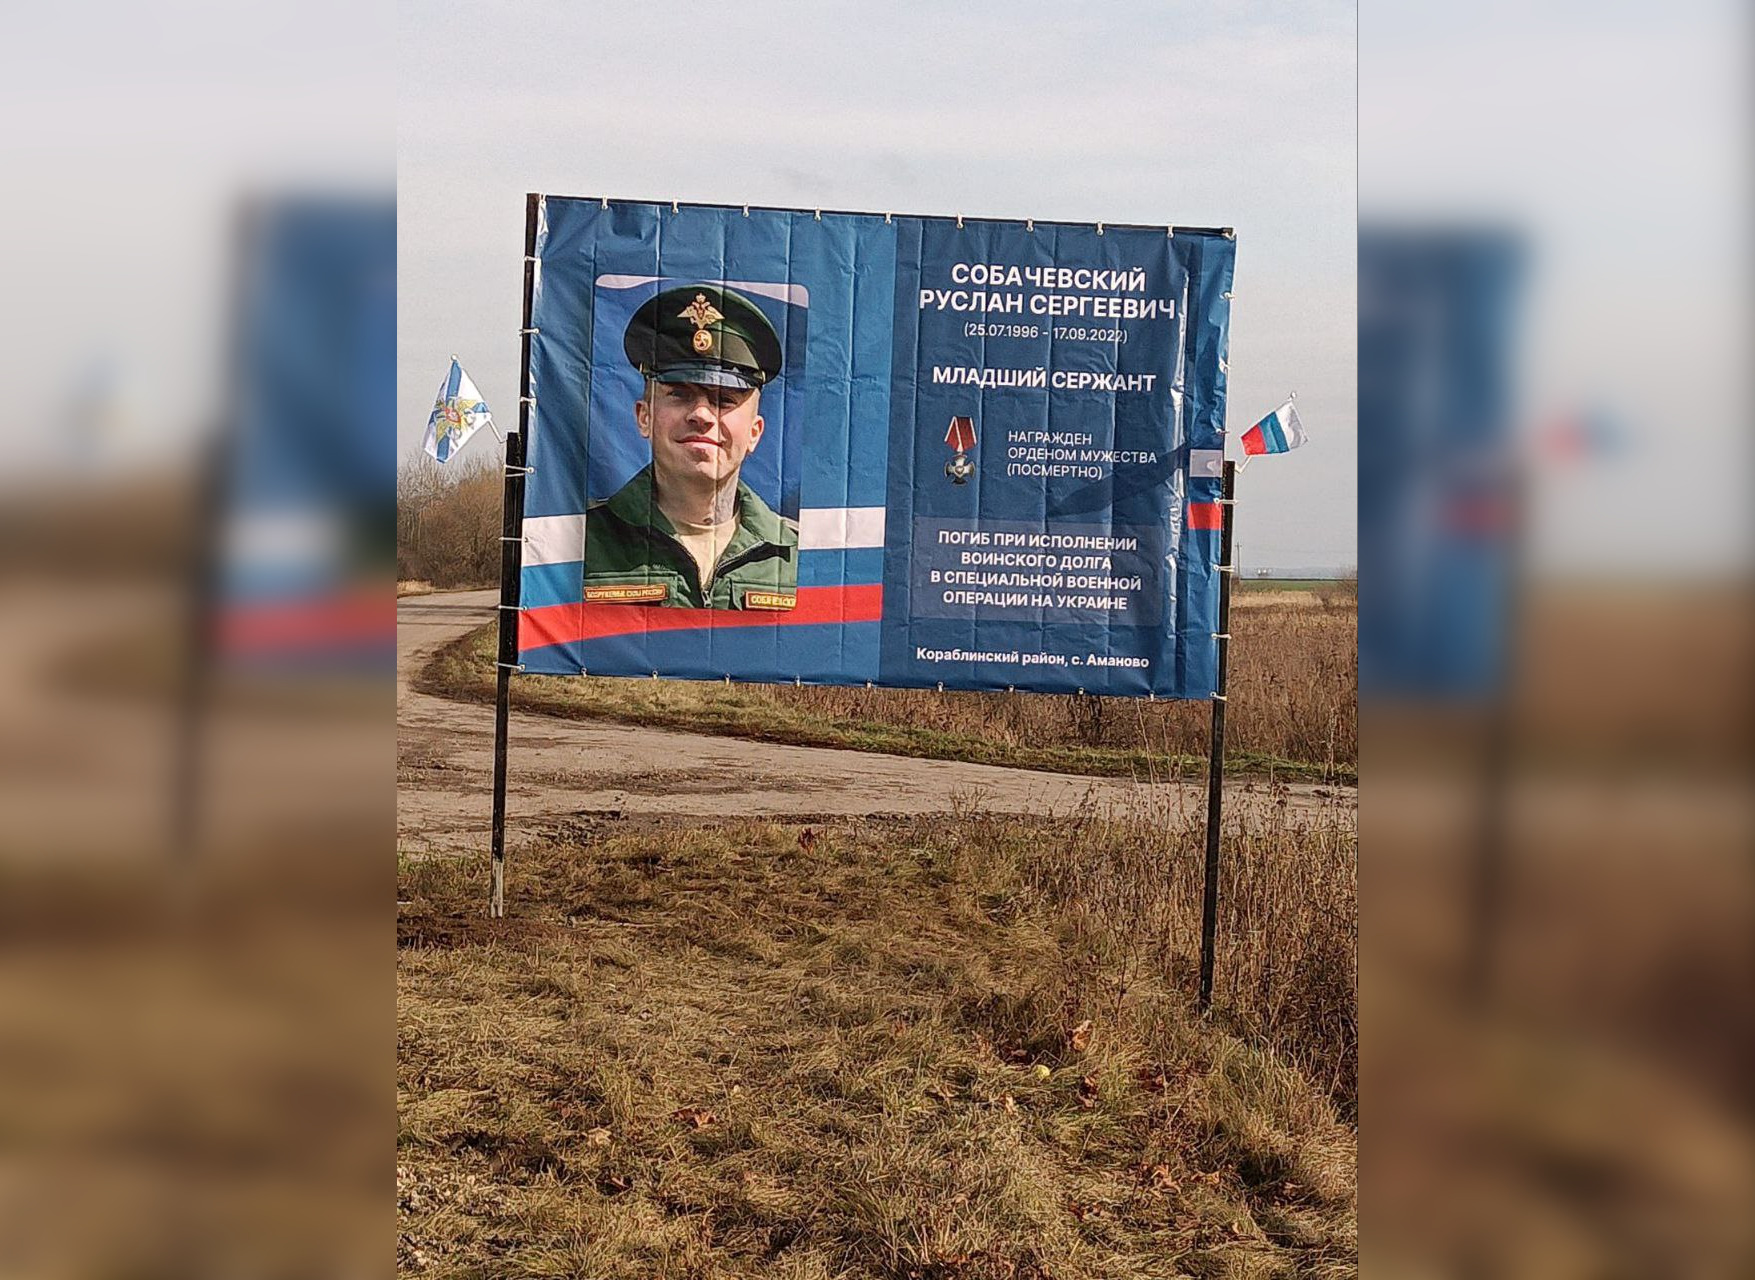 Рязанец сам установил баннер в память о погибшем на Украине боевом товарище